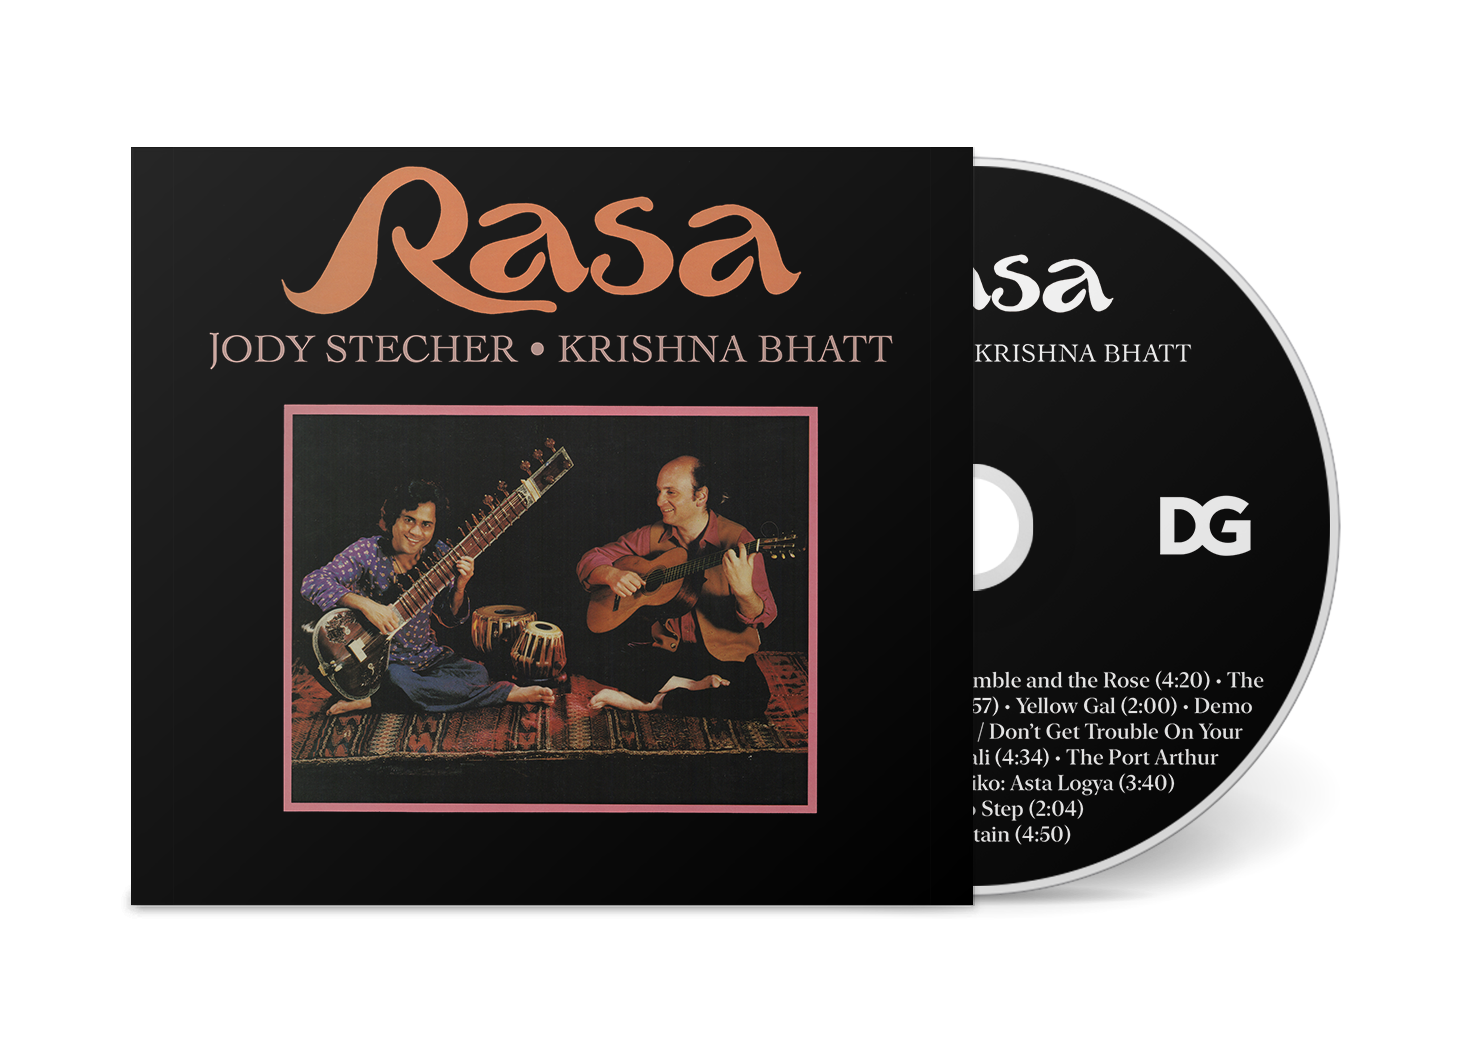 Jody Stecher & Krishna Bhatt "Rasa" CD